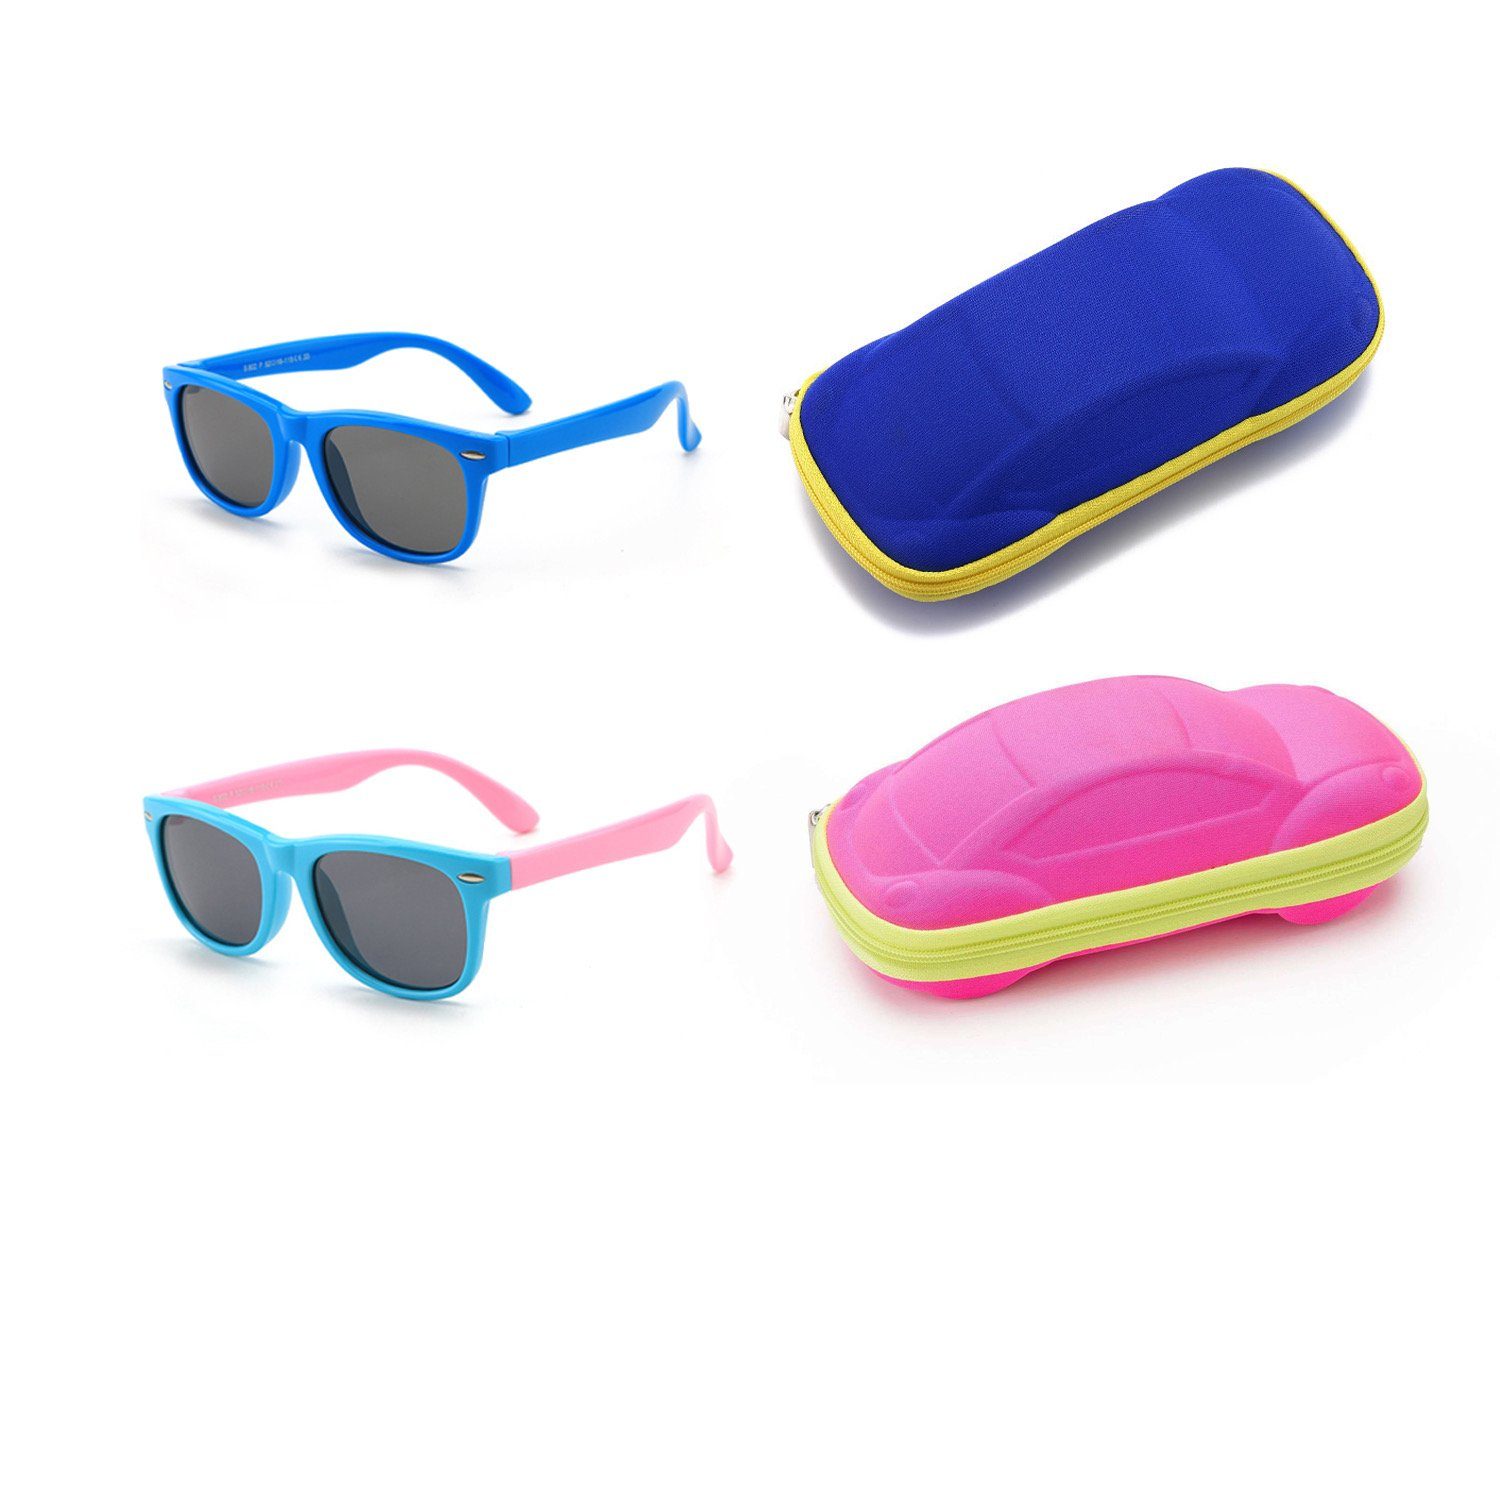 Olotos Sonnenbrille Sonnenbrille für Kinder Schutz Mädchen Blau+Hellblau 100% mit Jungen Brillenetui Gummi Brille UV400